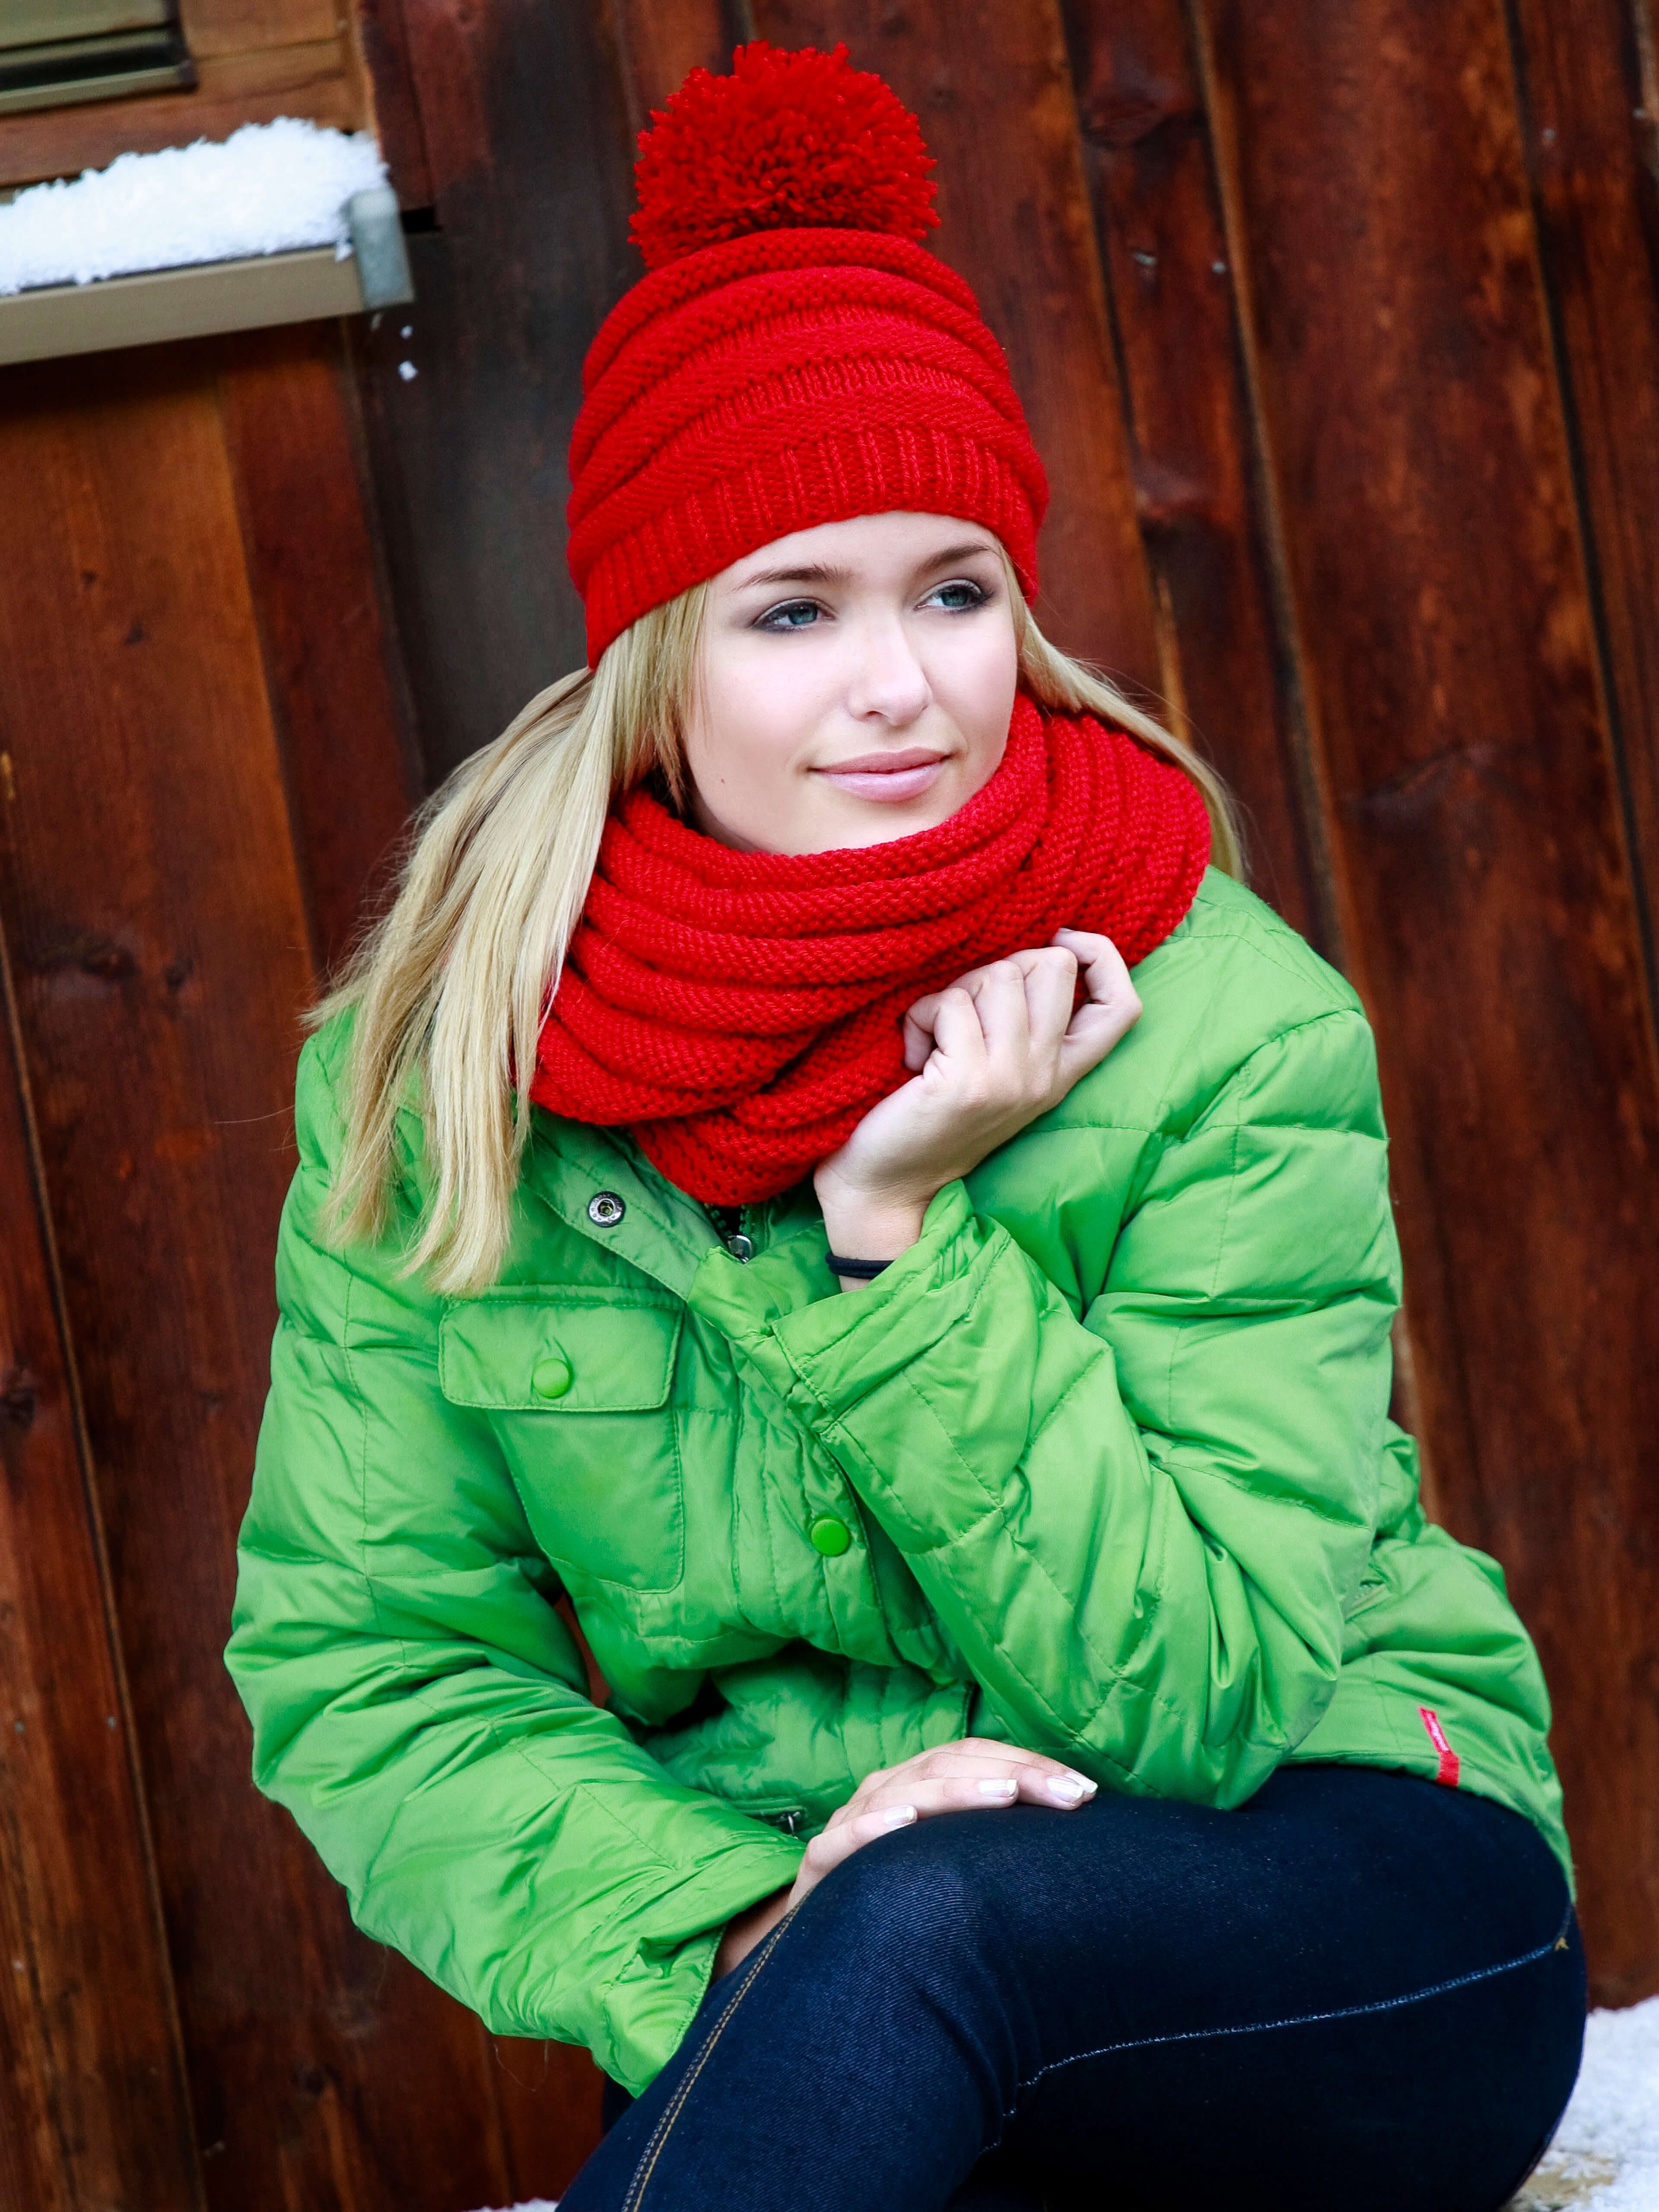 blonde Frau mit grüner Jacke und rotem Schal sowie Mütze